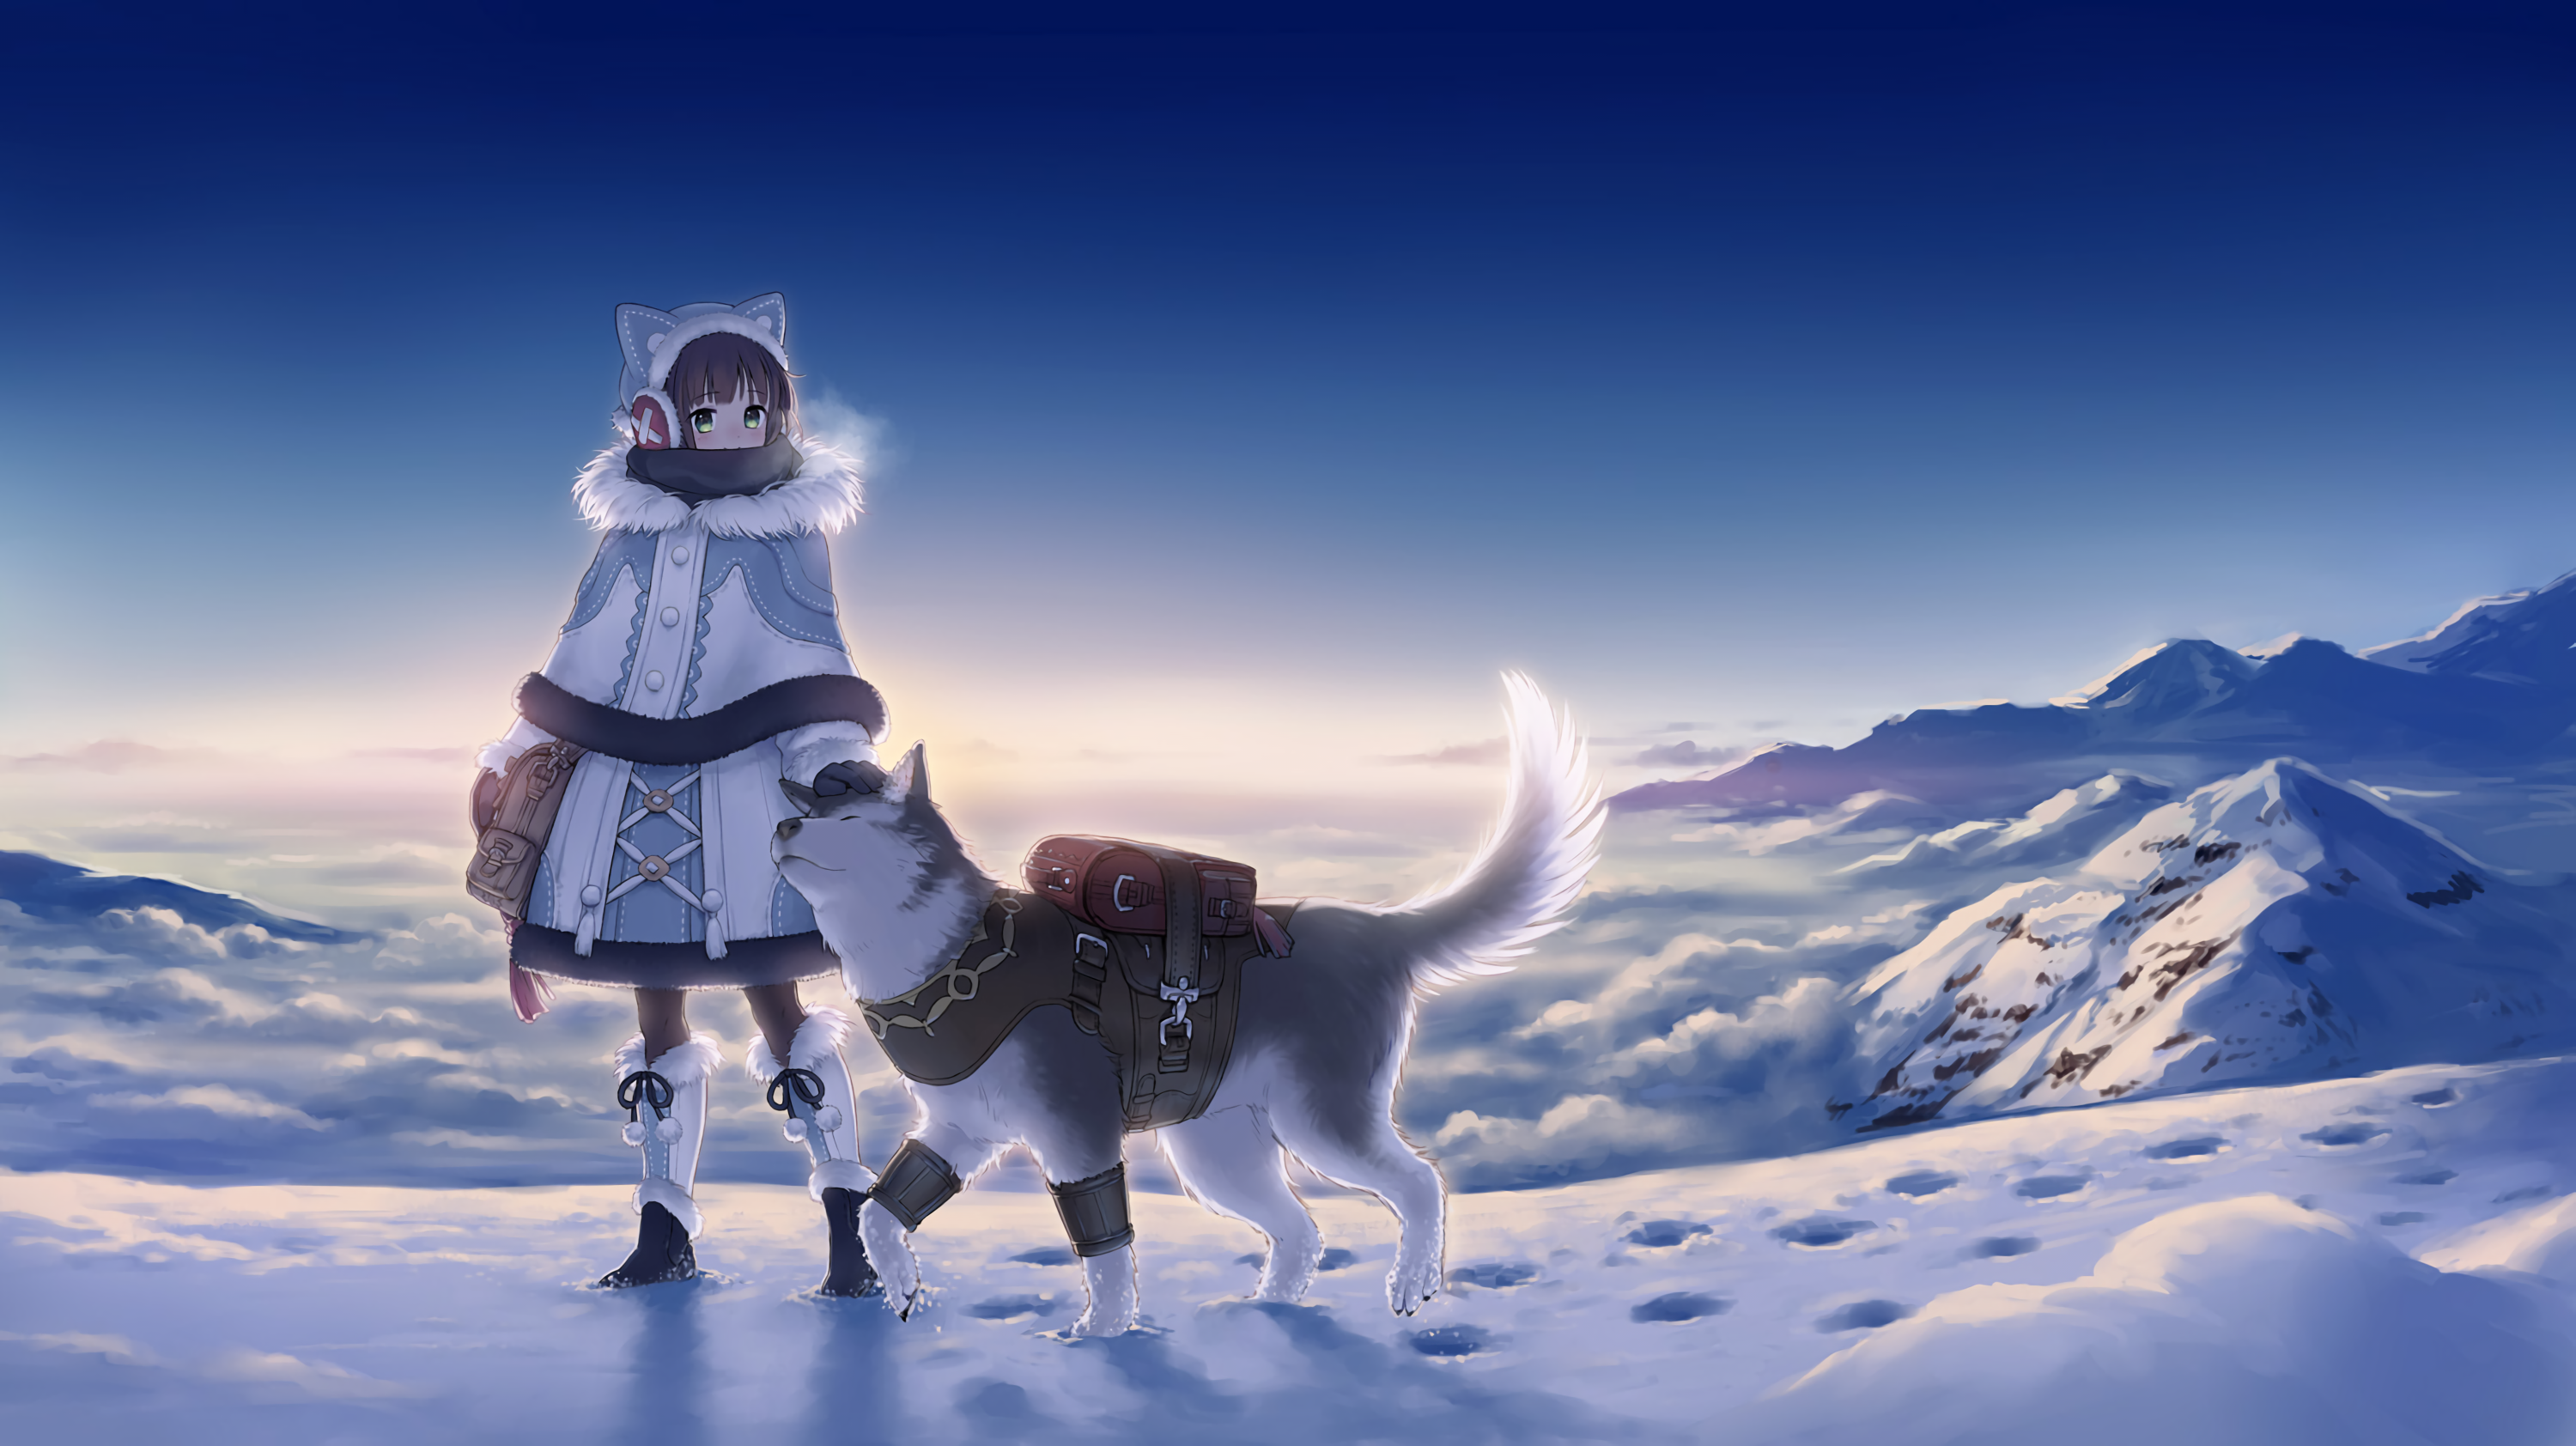 Anime 3000x1684 sky dog snow landscape boots animal ears scarf snowy peak anime anime girls